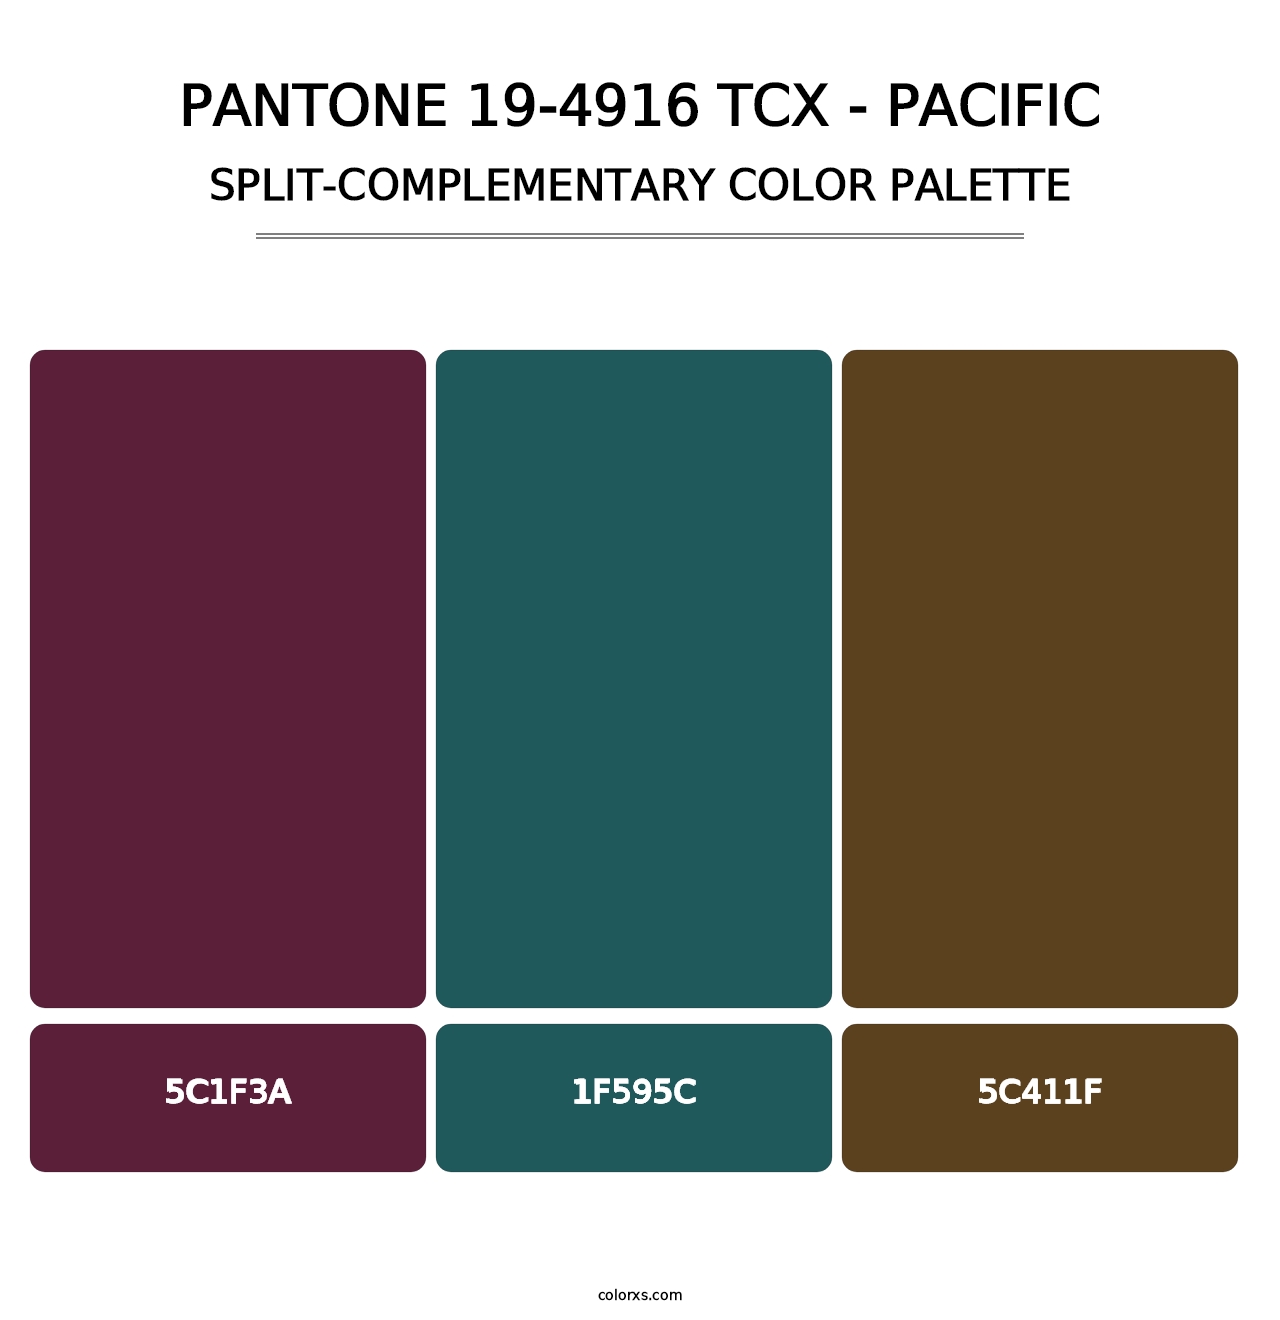 PANTONE 19-4916 TCX - Pacific - Split-Complementary Color Palette